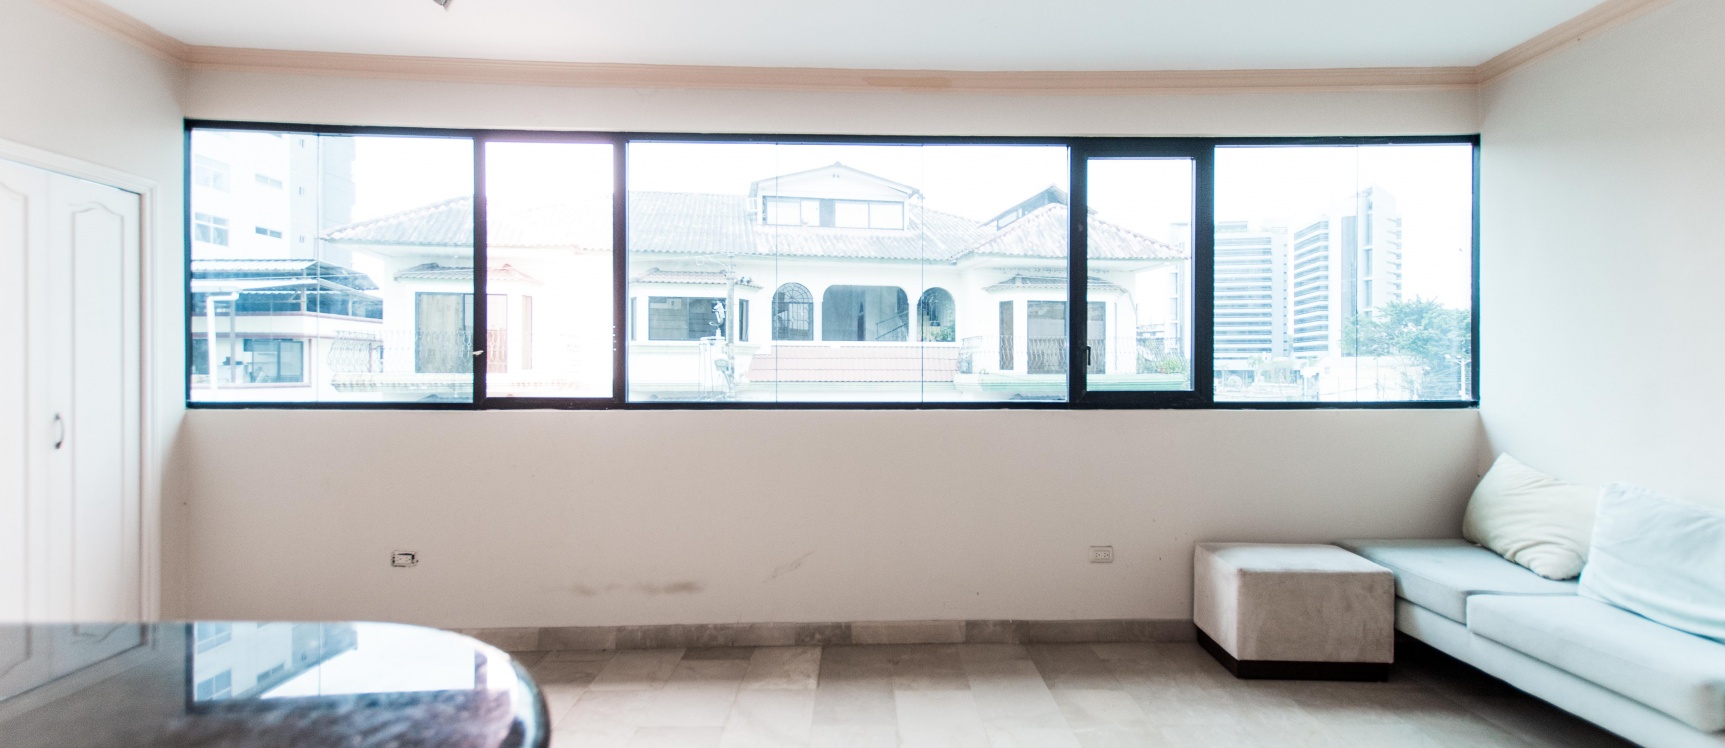 GeoBienes - Departamento amoblado en alquiler ubicado en Kennedy Norte - Plusvalia Guayaquil Casas de venta y alquiler Inmobiliaria Ecuador